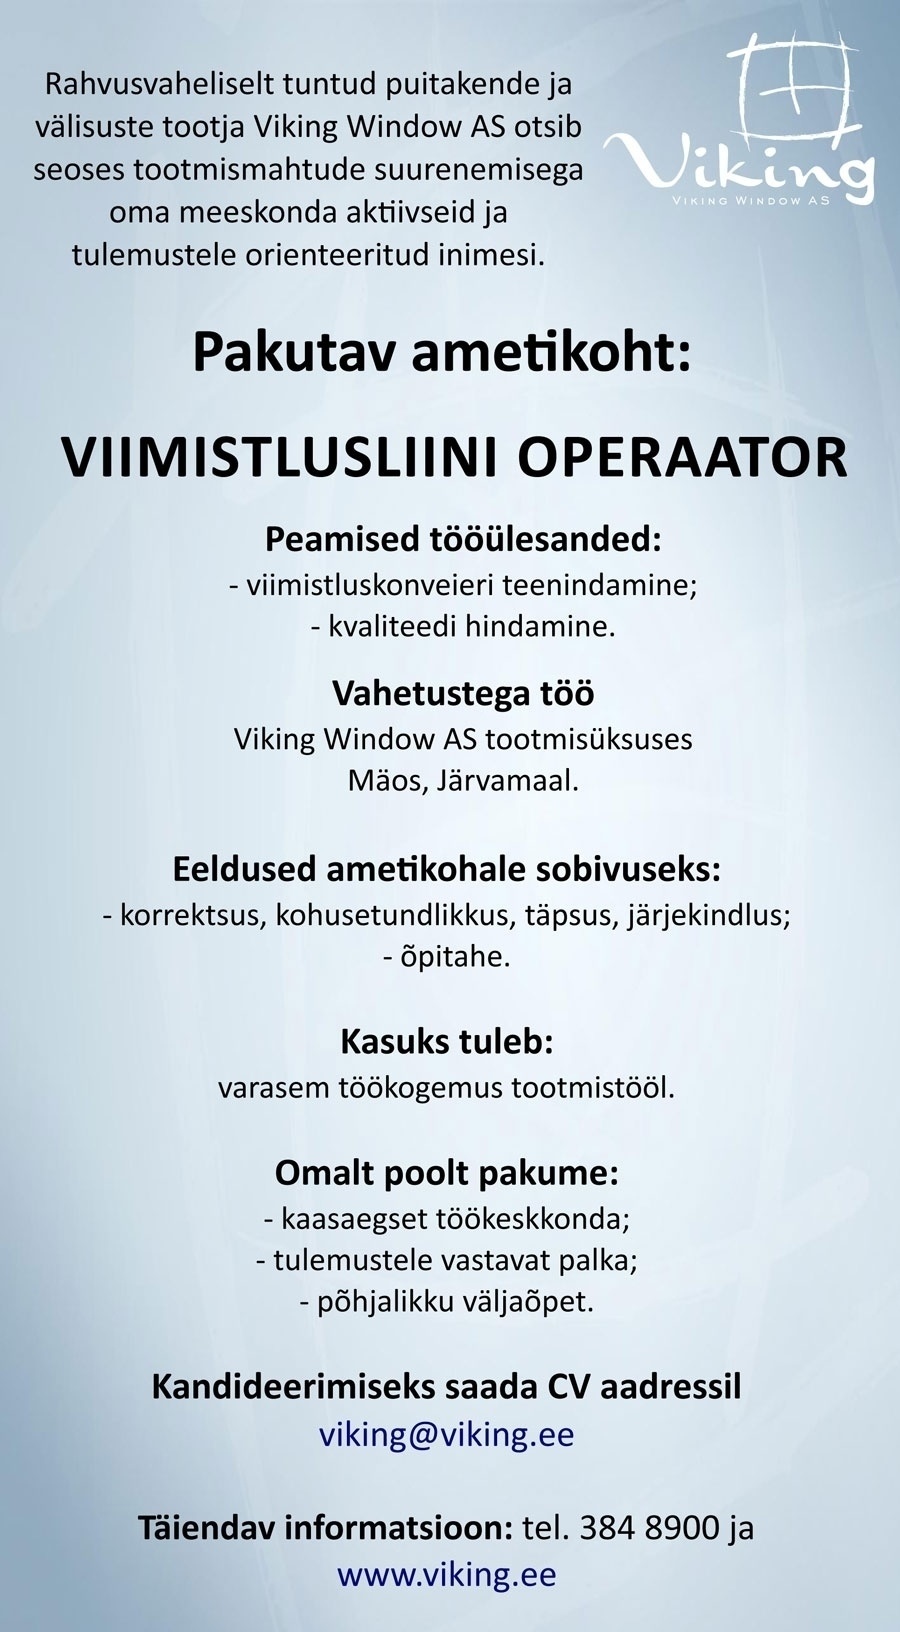 Viking Window AS Viimistlusliini operaator